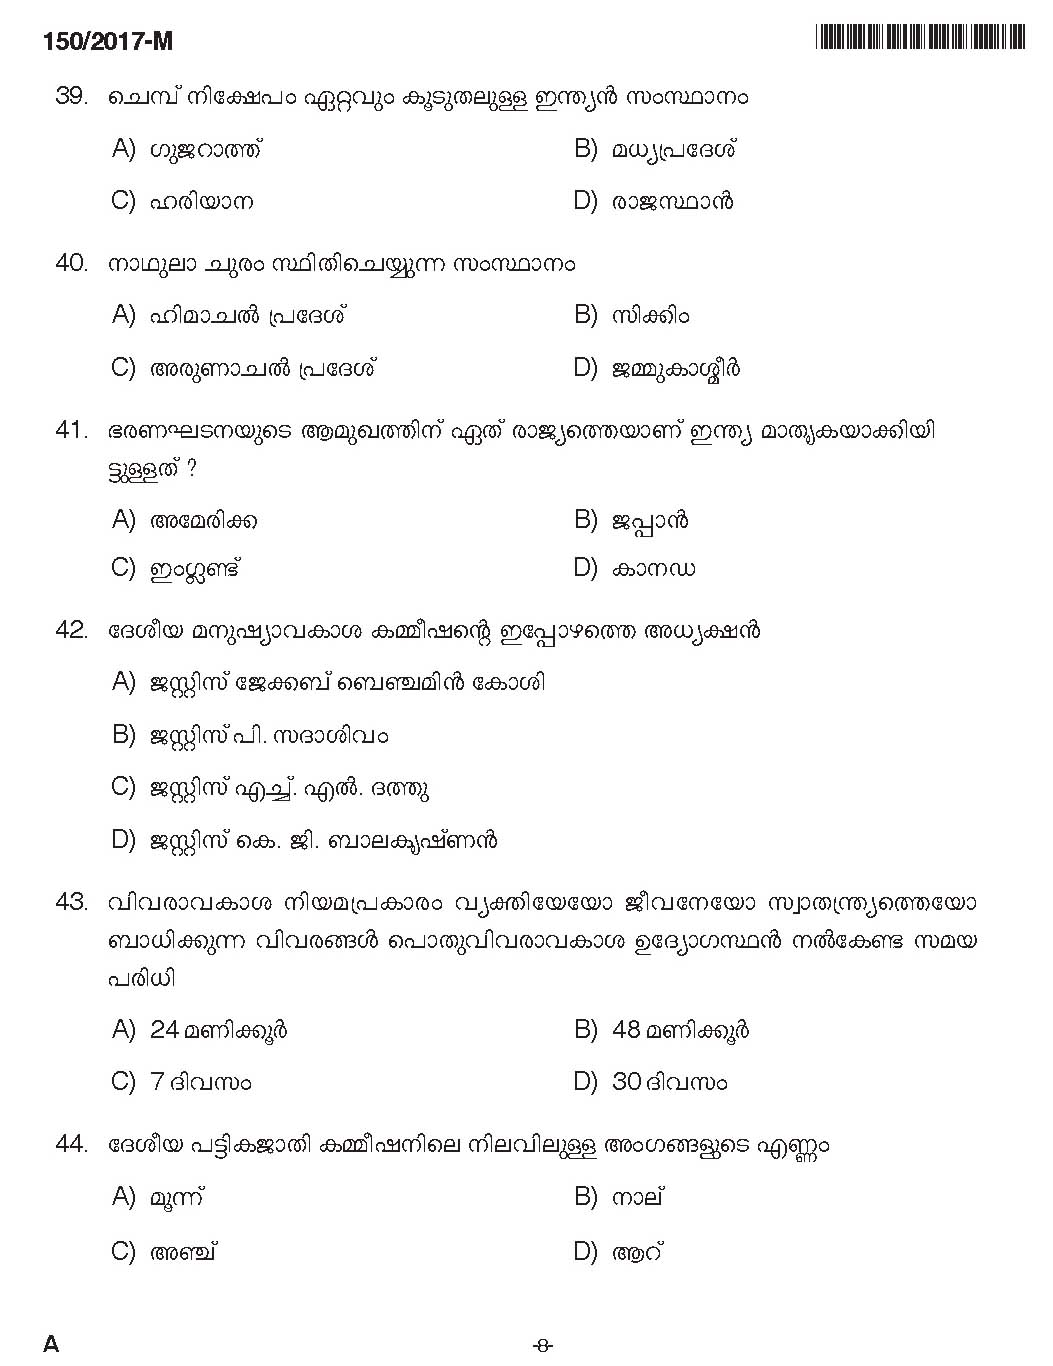 Kerala PSC Boat Deckman Exam Question Code 1502017 M 7